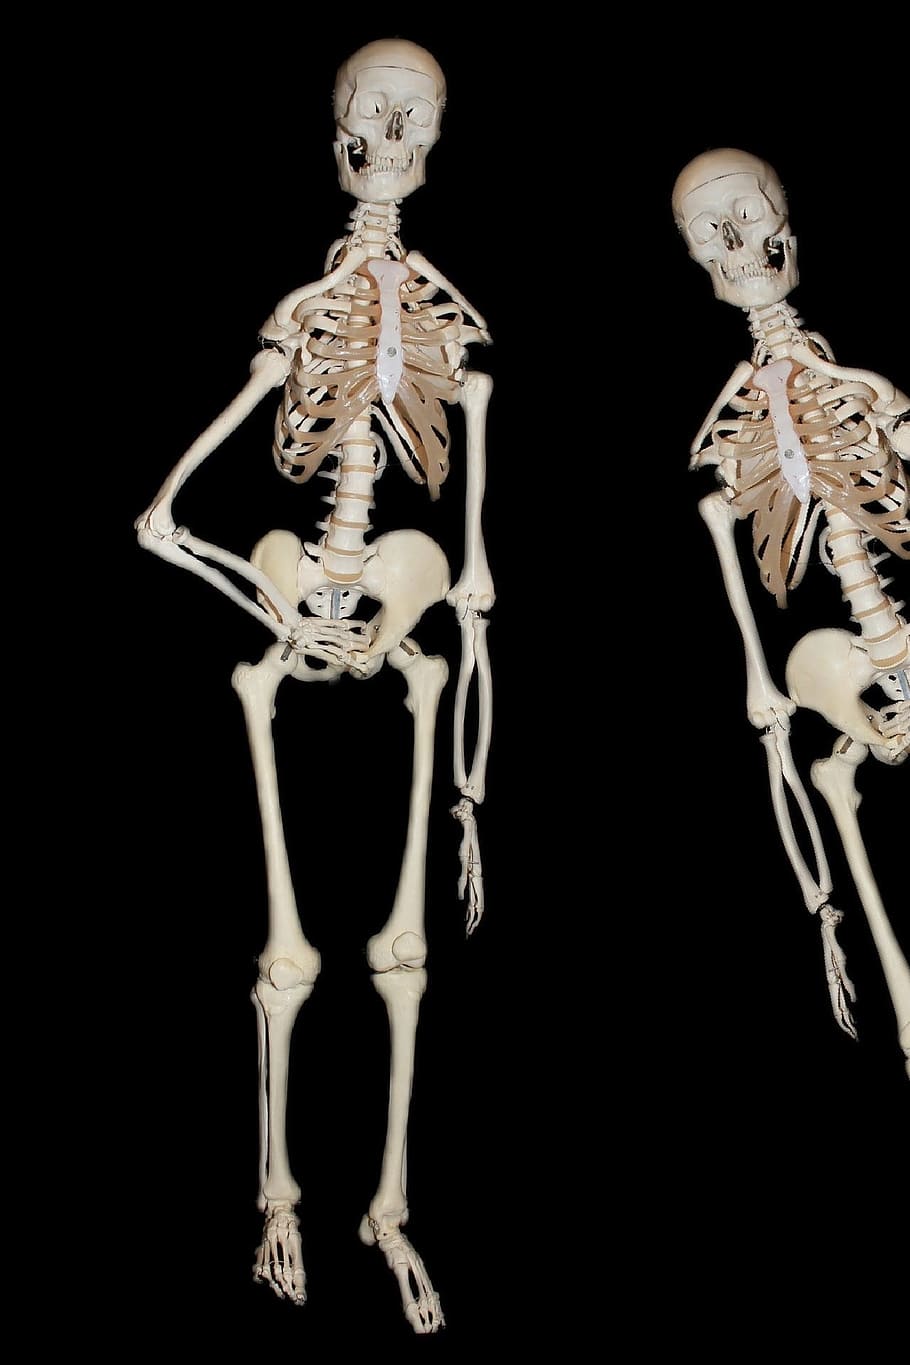 Esqueleto, Humano, Osso, Crânio, crânio e ossos cruzados, médico, morte, anatomia humana, representação, cabeça